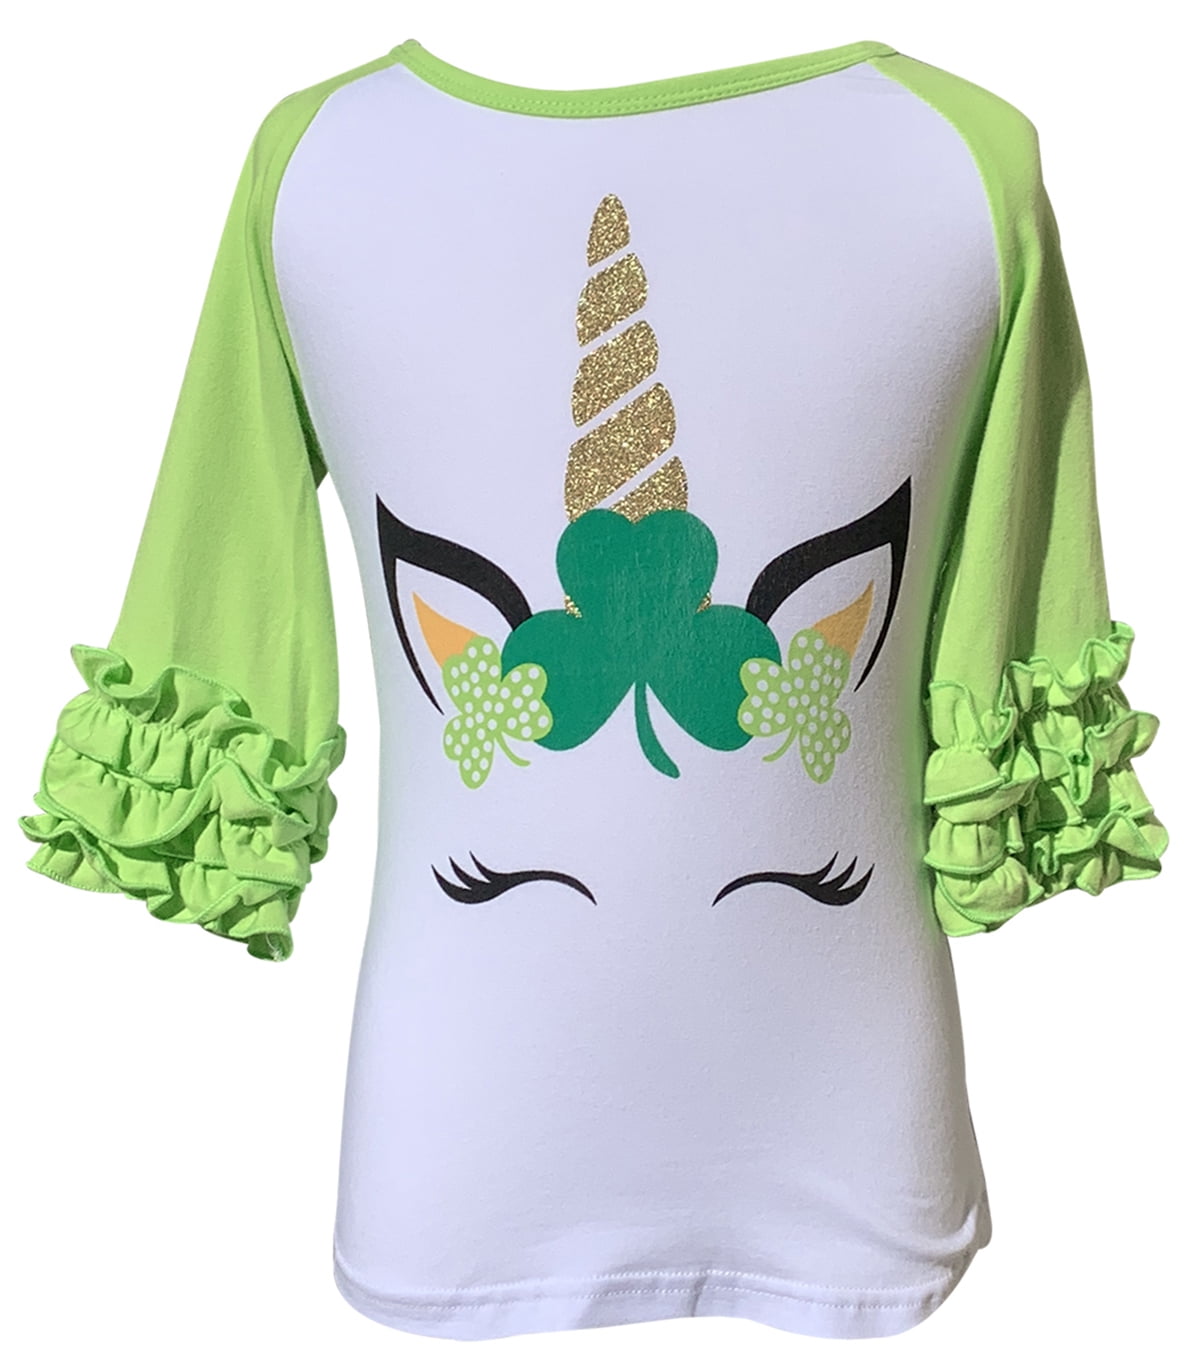 Kids/Girls/Youth Leprechaun Riding a Unicorn St Patrick's Day T-Shirt 